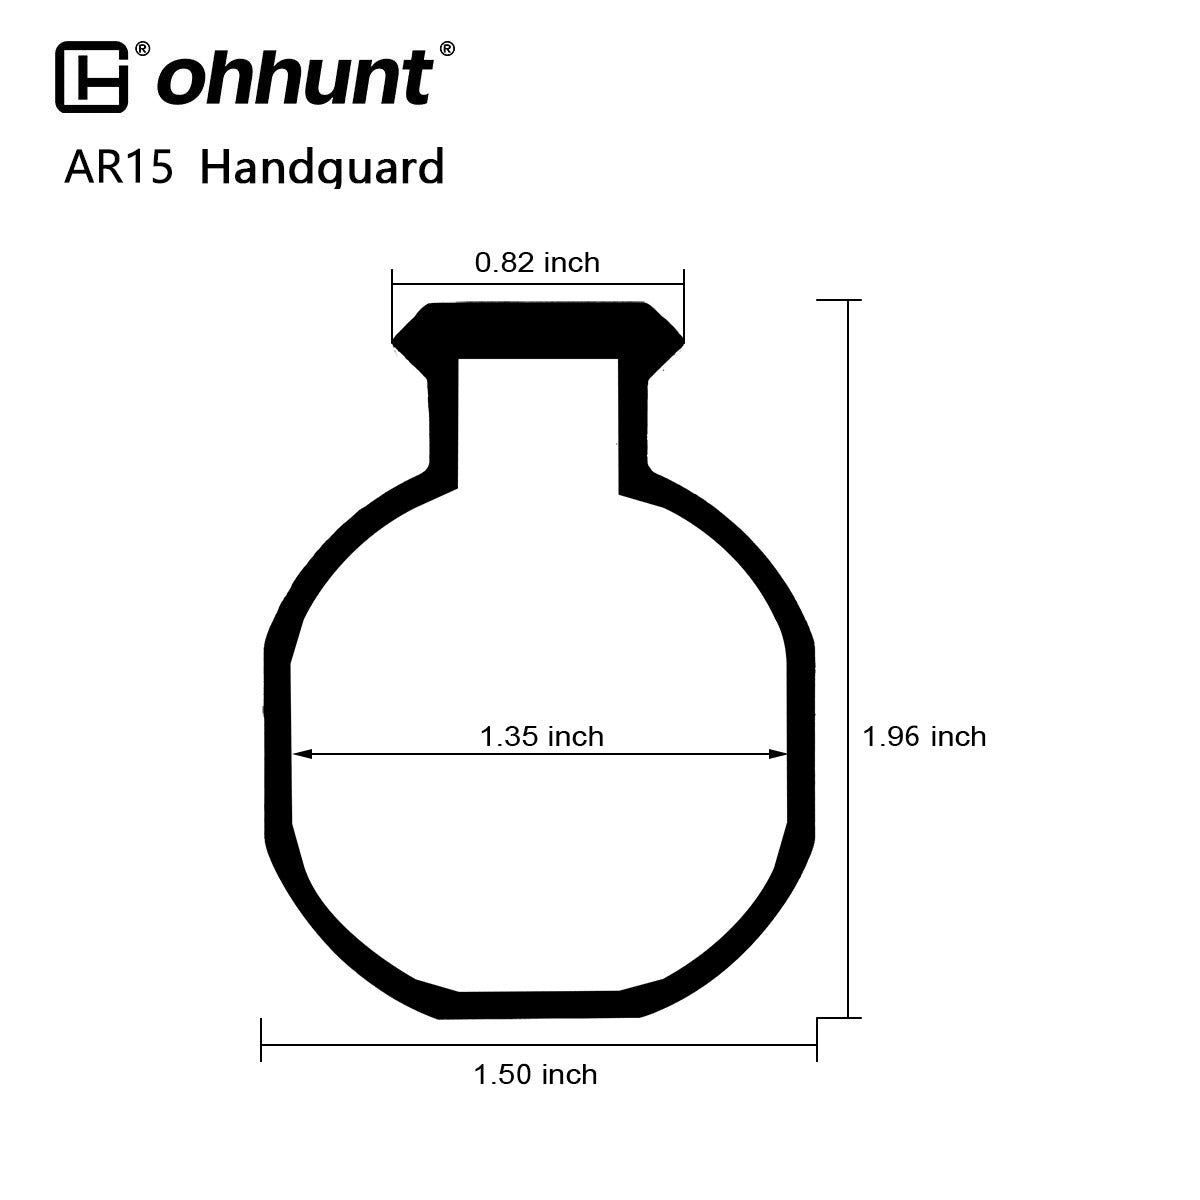 ohhunt AR15 Free Float Keymod Handguard with Barrel Nut - 10 inch